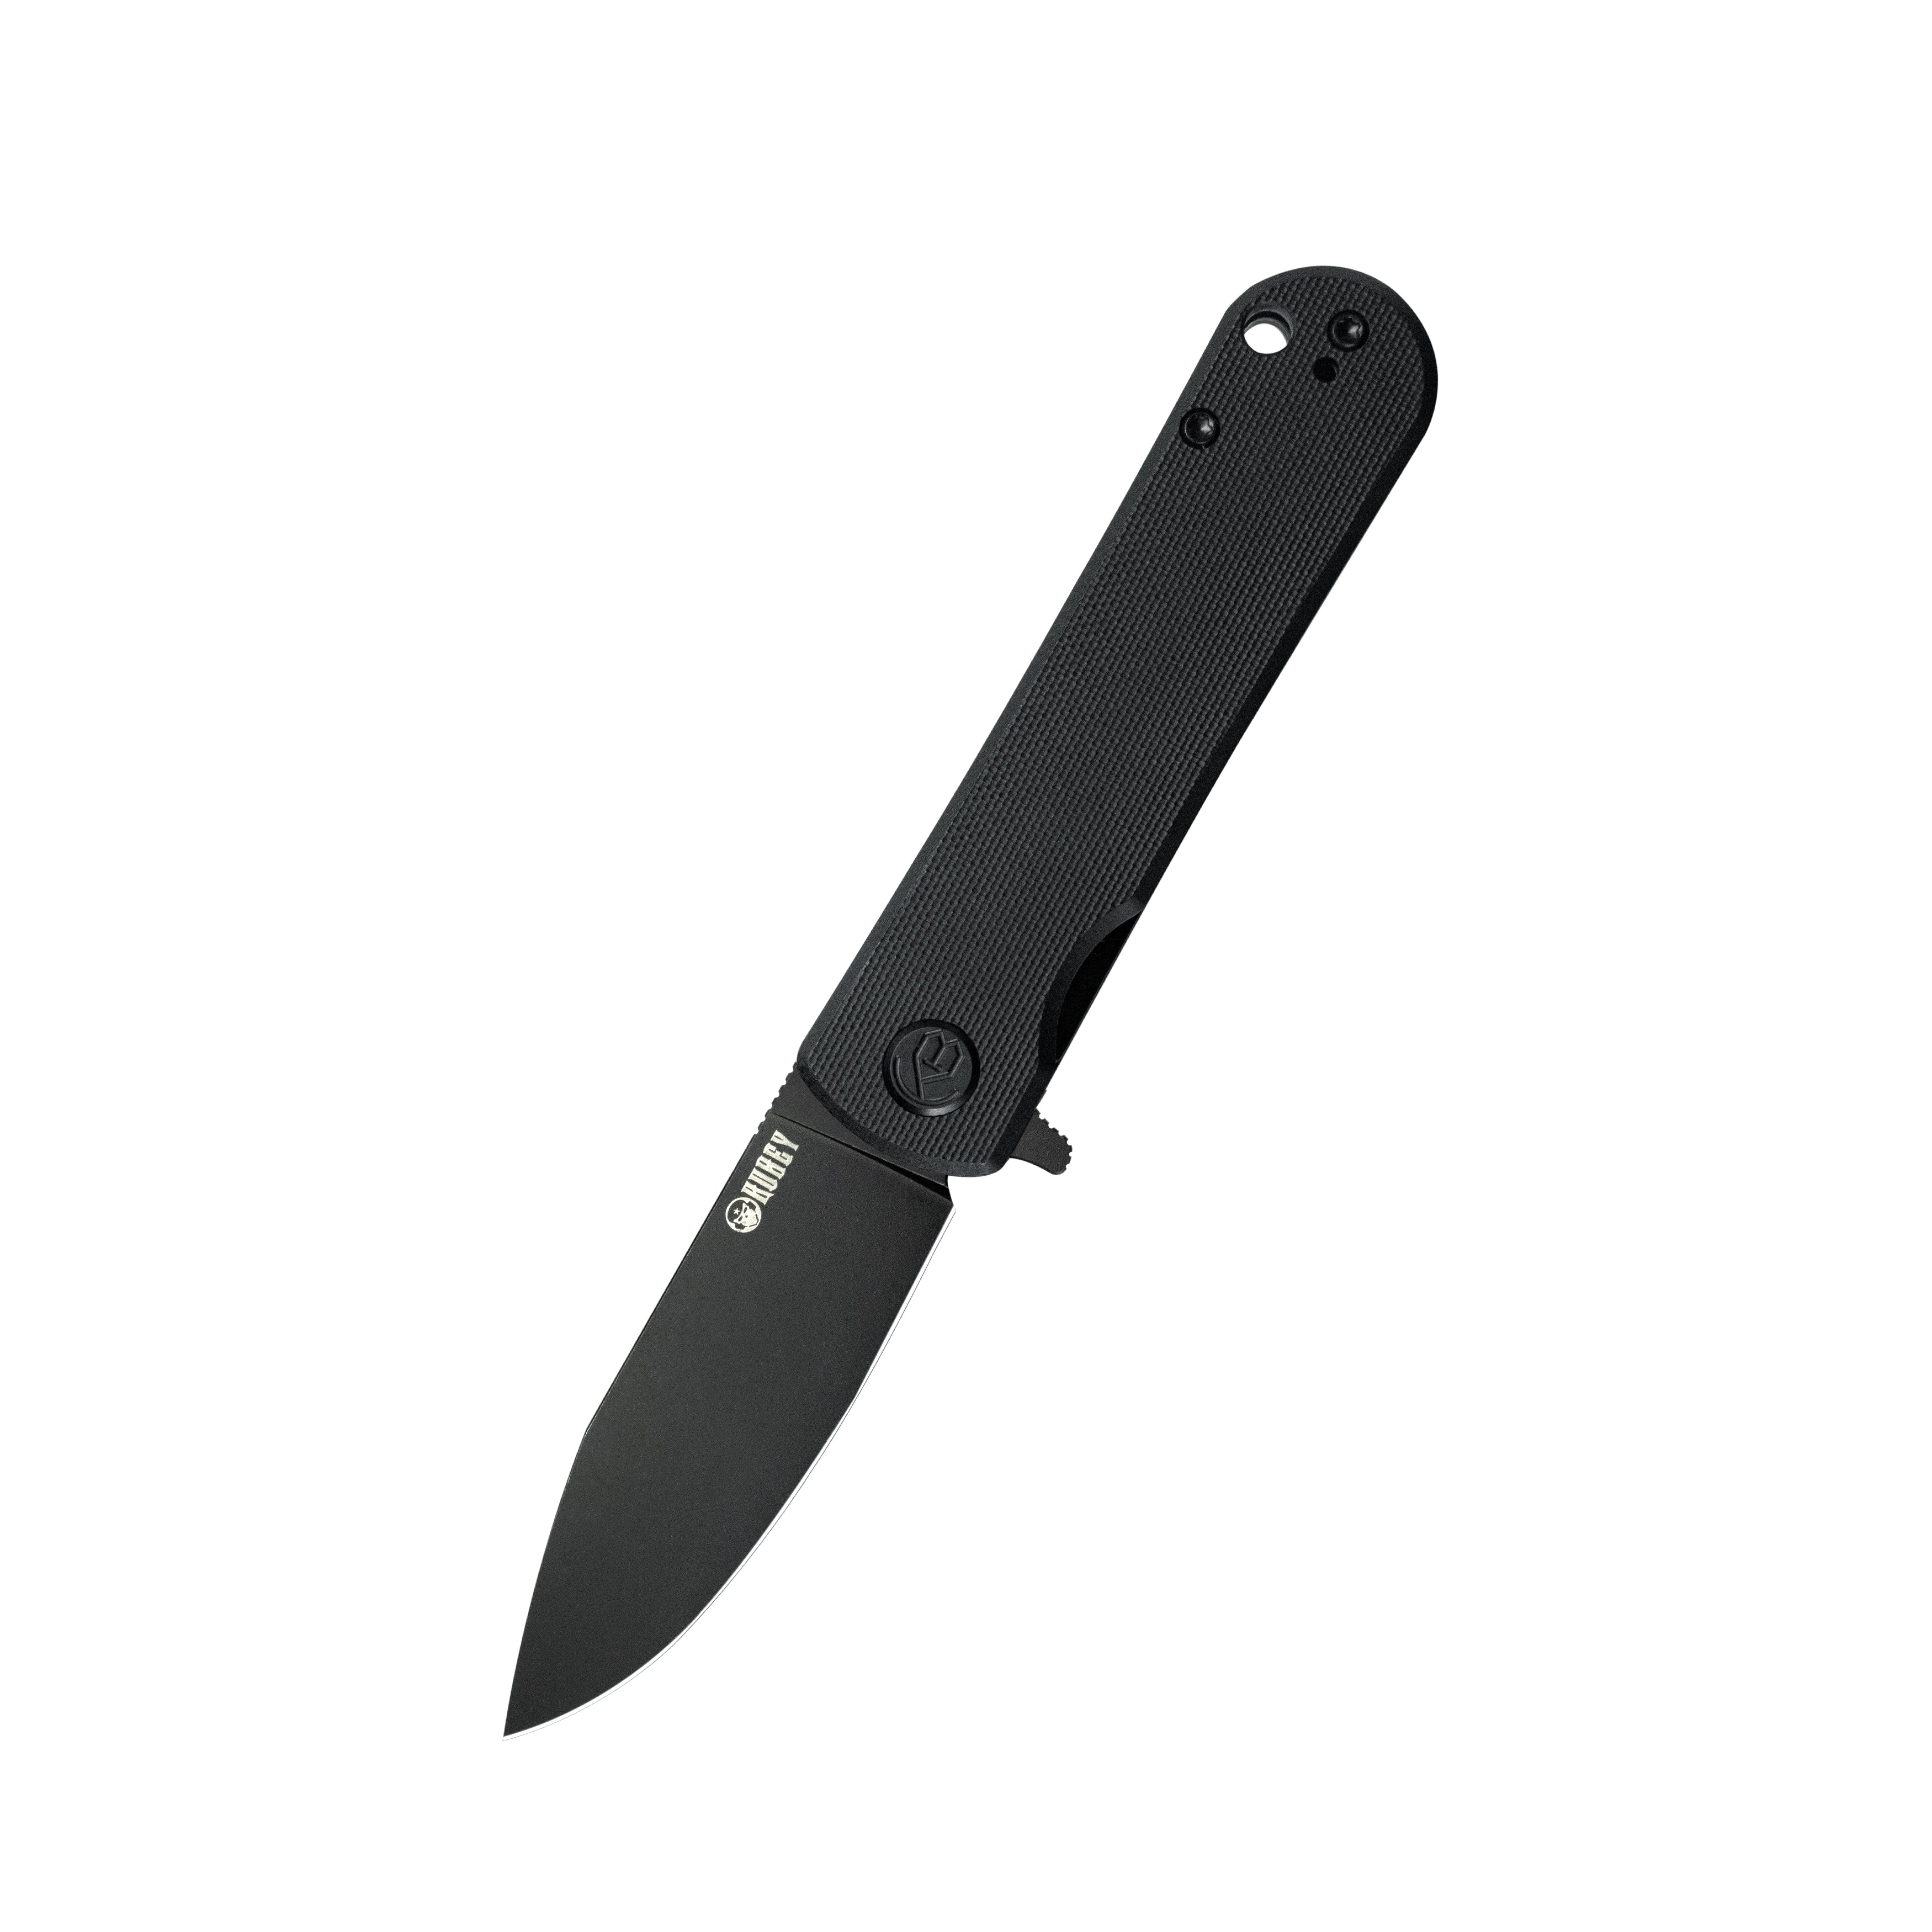 Kubey NEO Outdoor Folding Pocket Knife Black G10 Handle 3.43" Blackwash AUS-10 KU371B